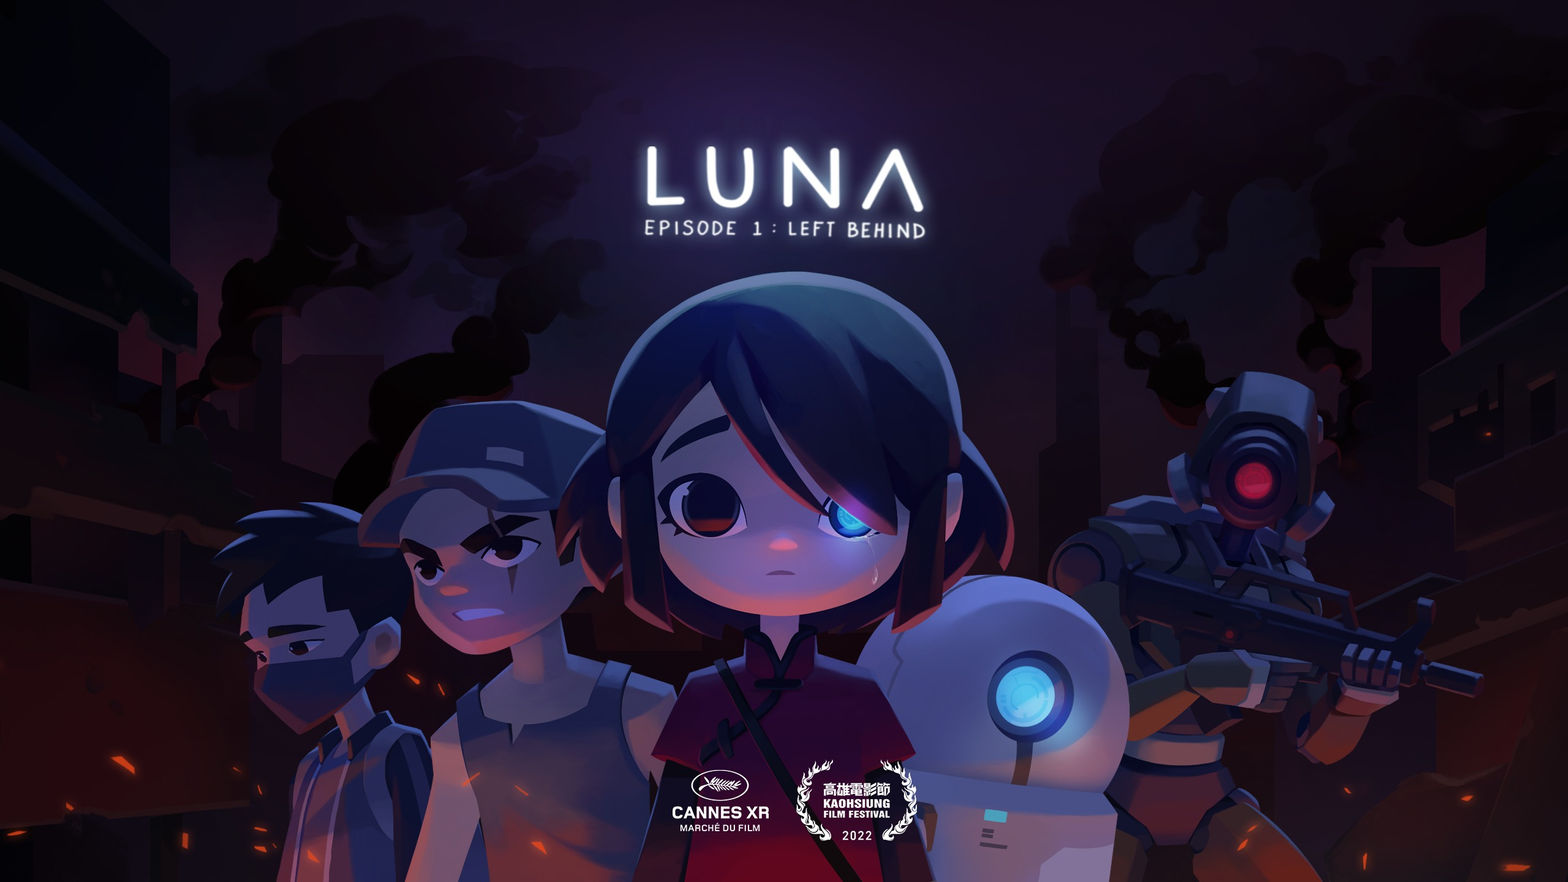 Luna: Episode 1 - Left Behind